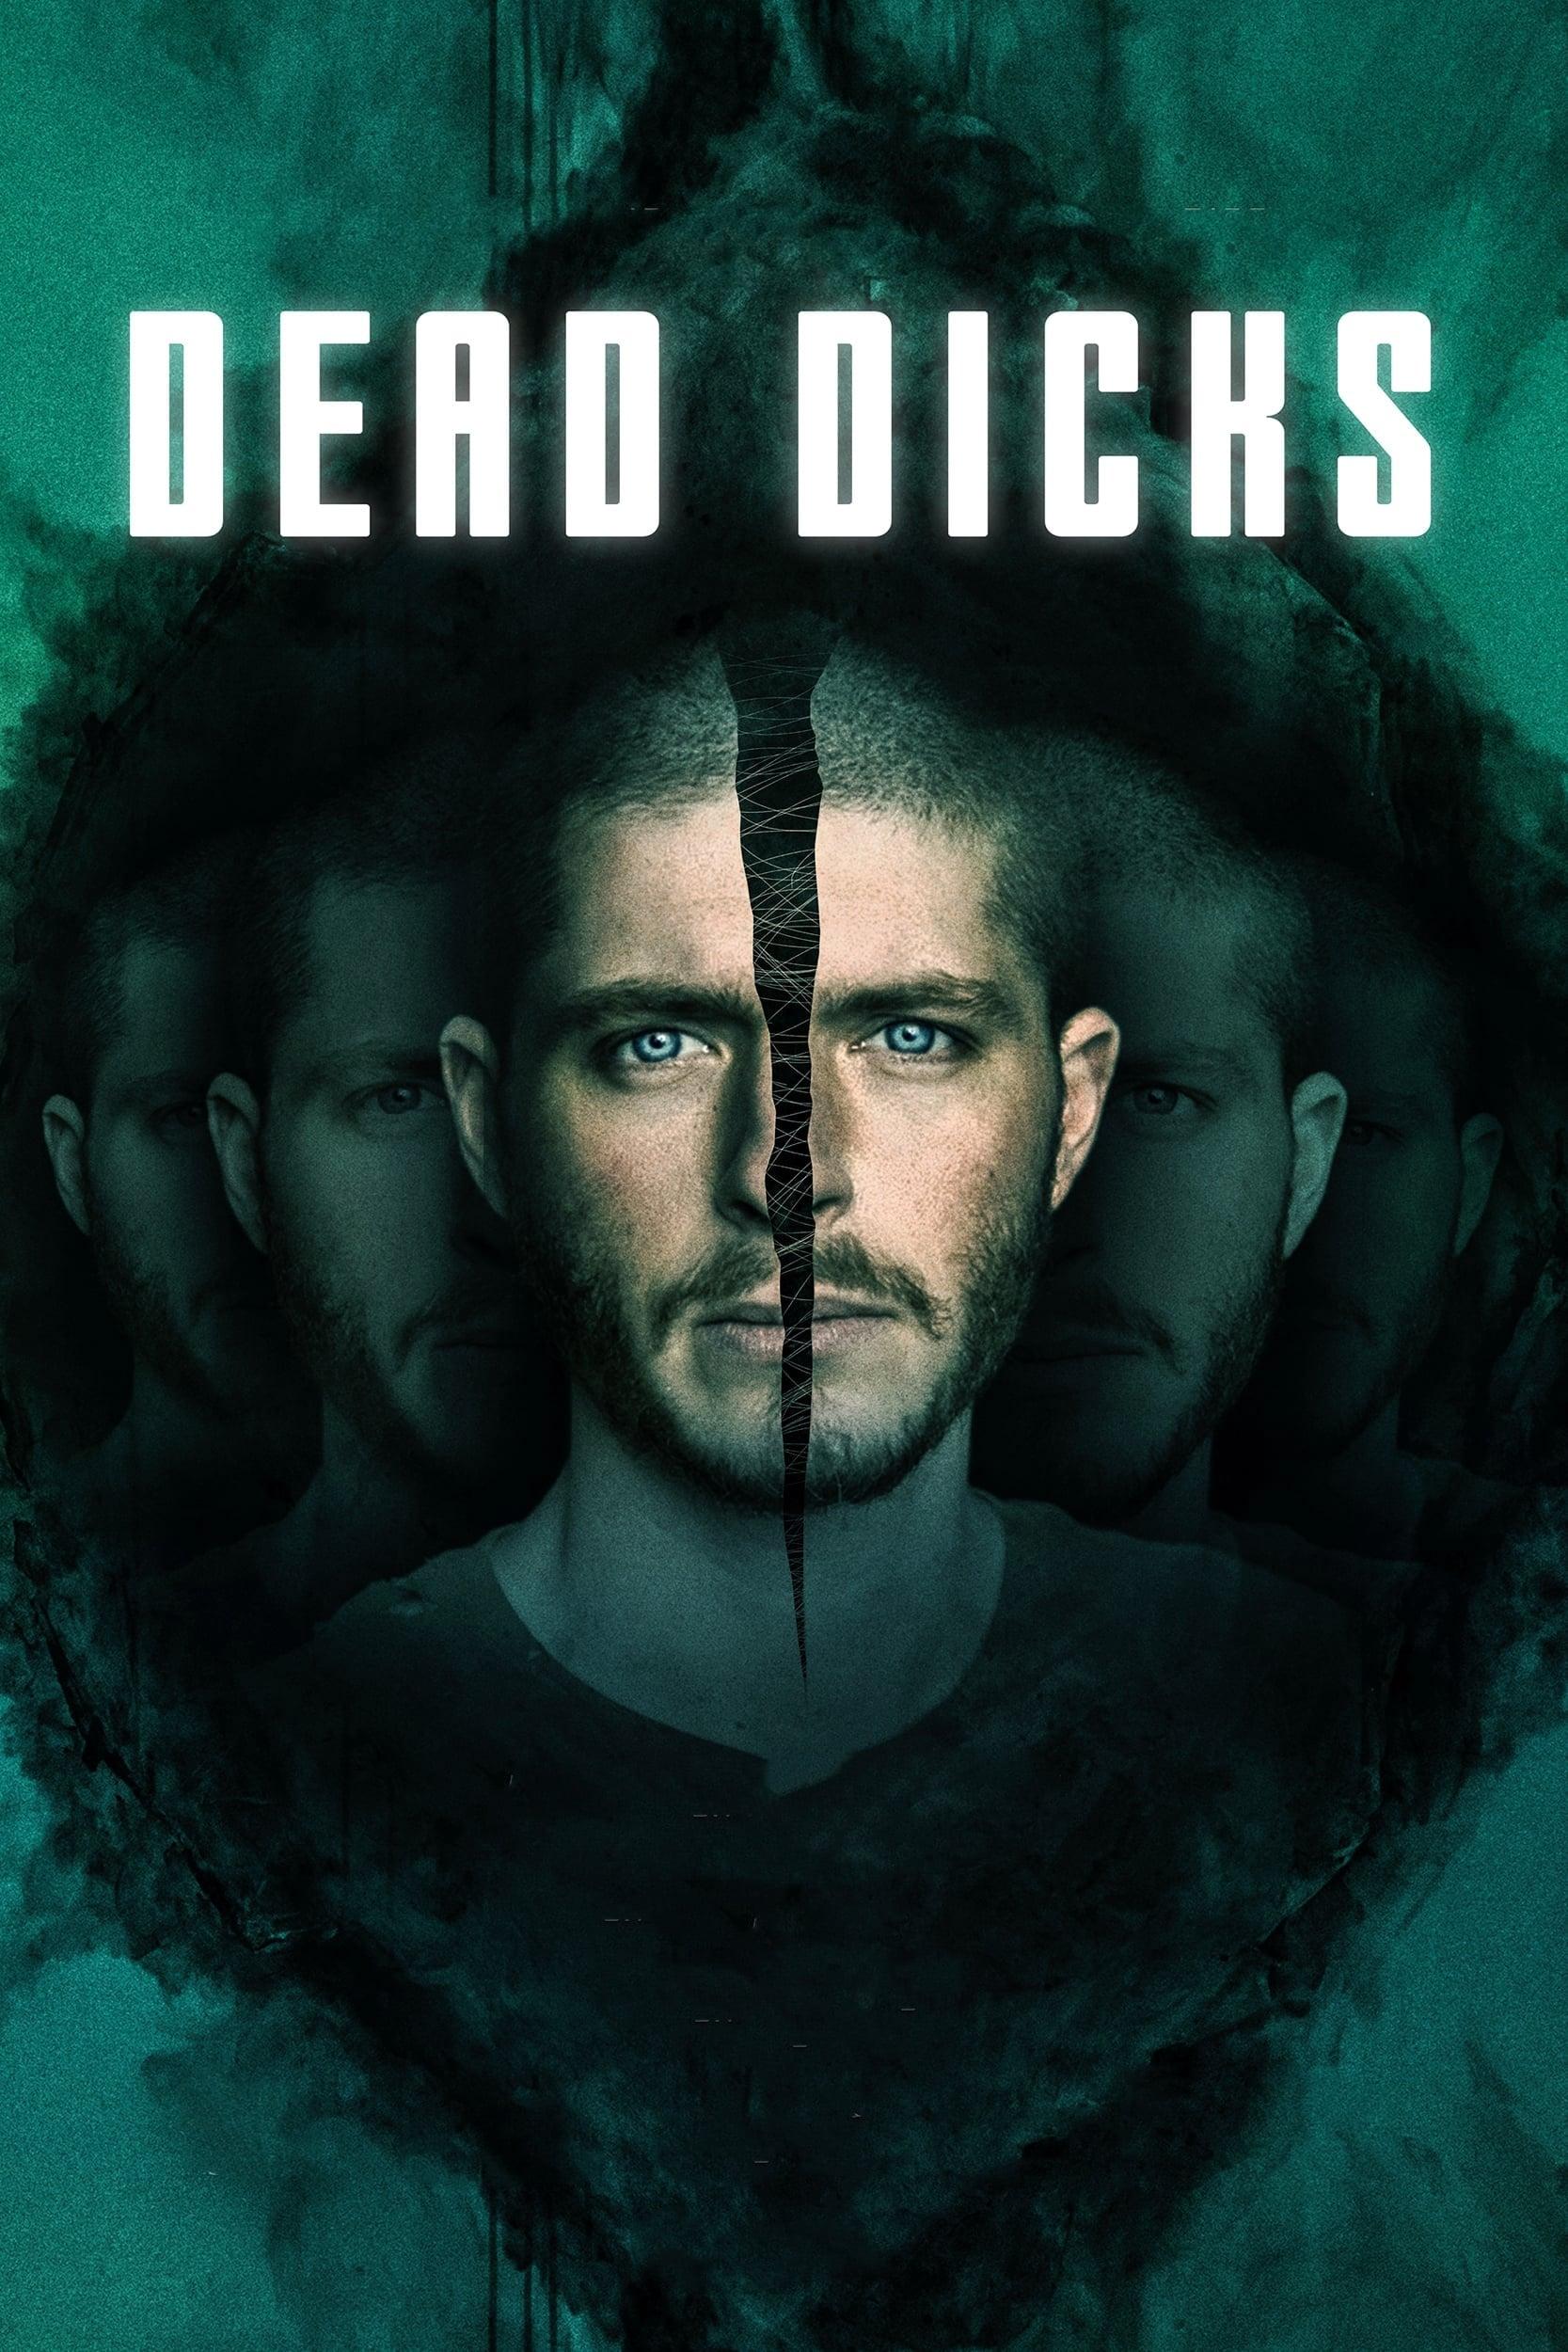 Dead Dicks poster